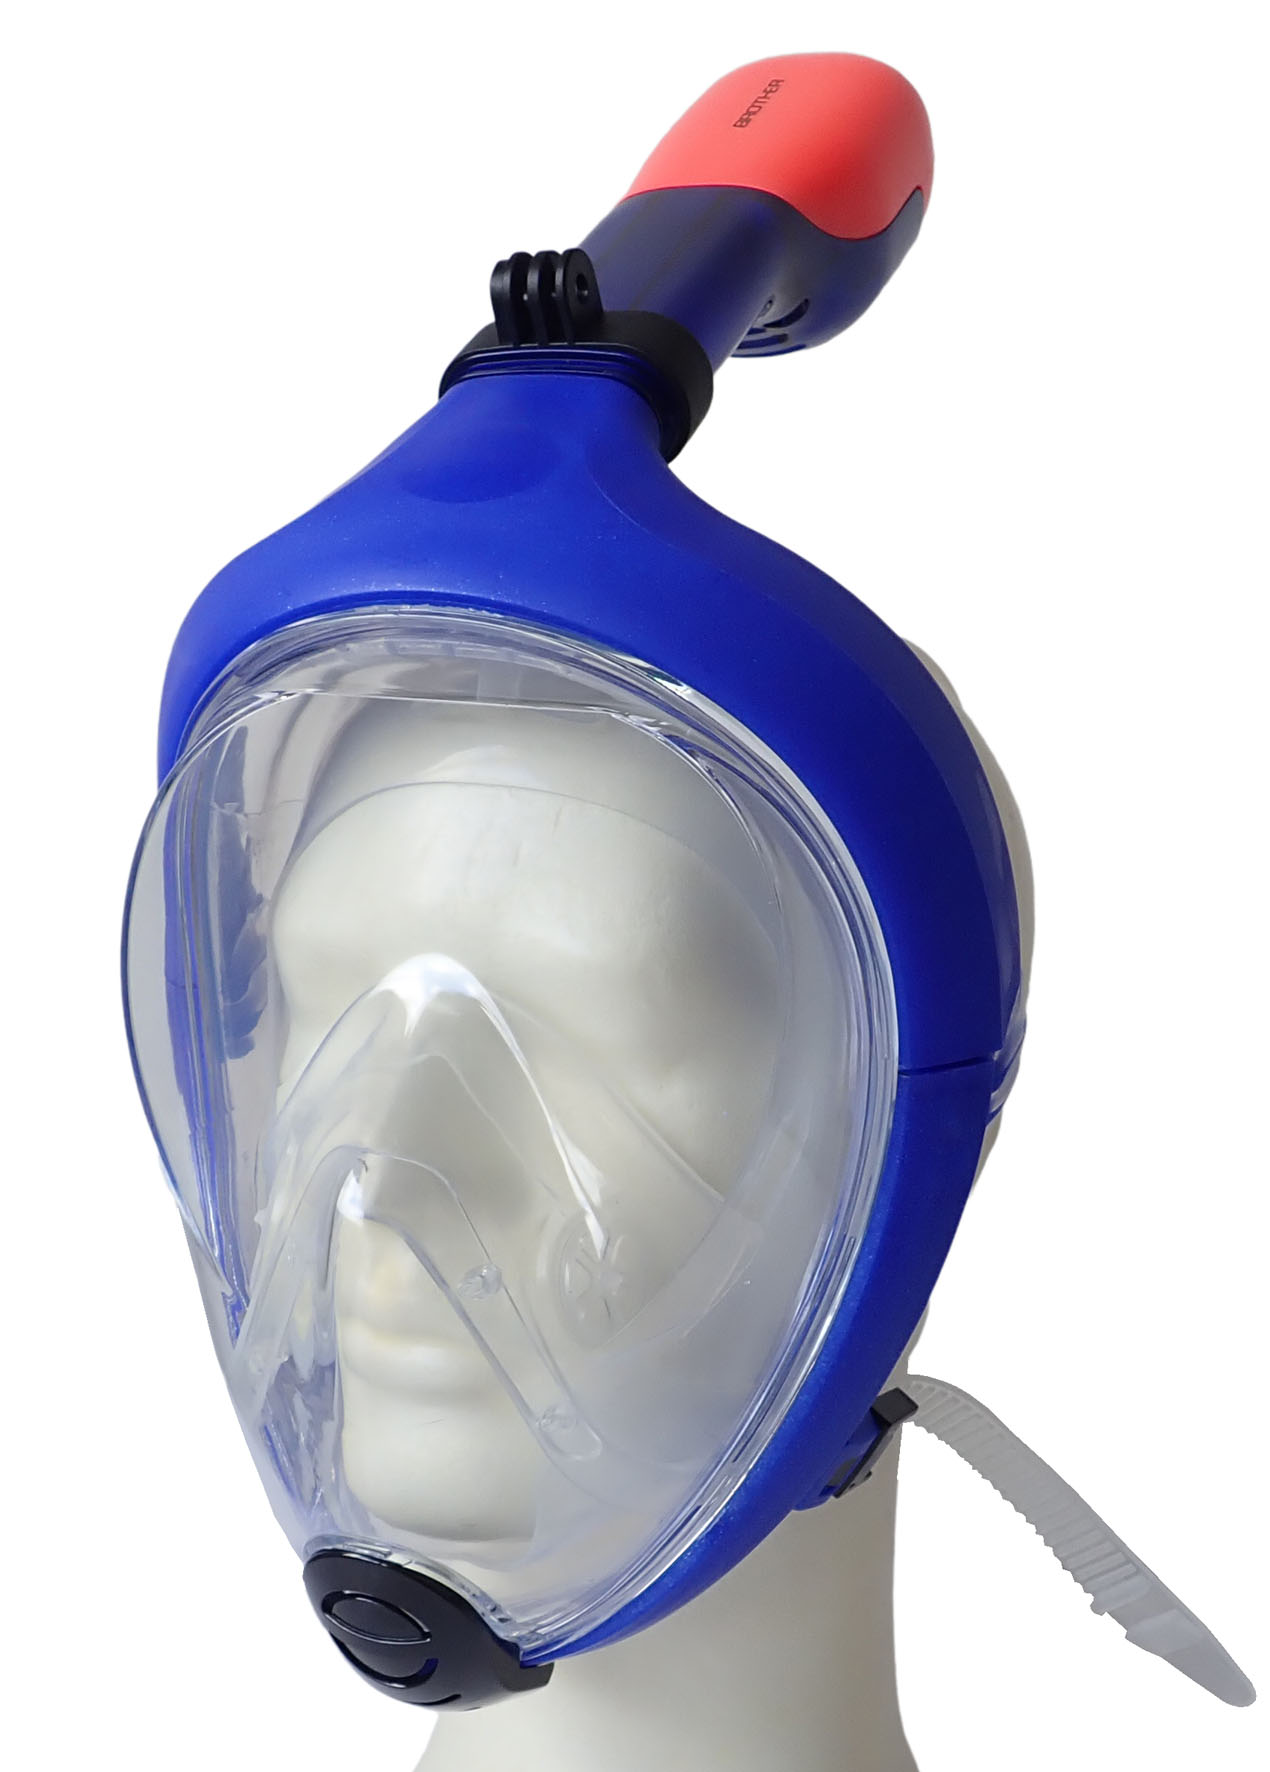 P1501L-MO Celoobličejová potápěčská maska se šnorchlem